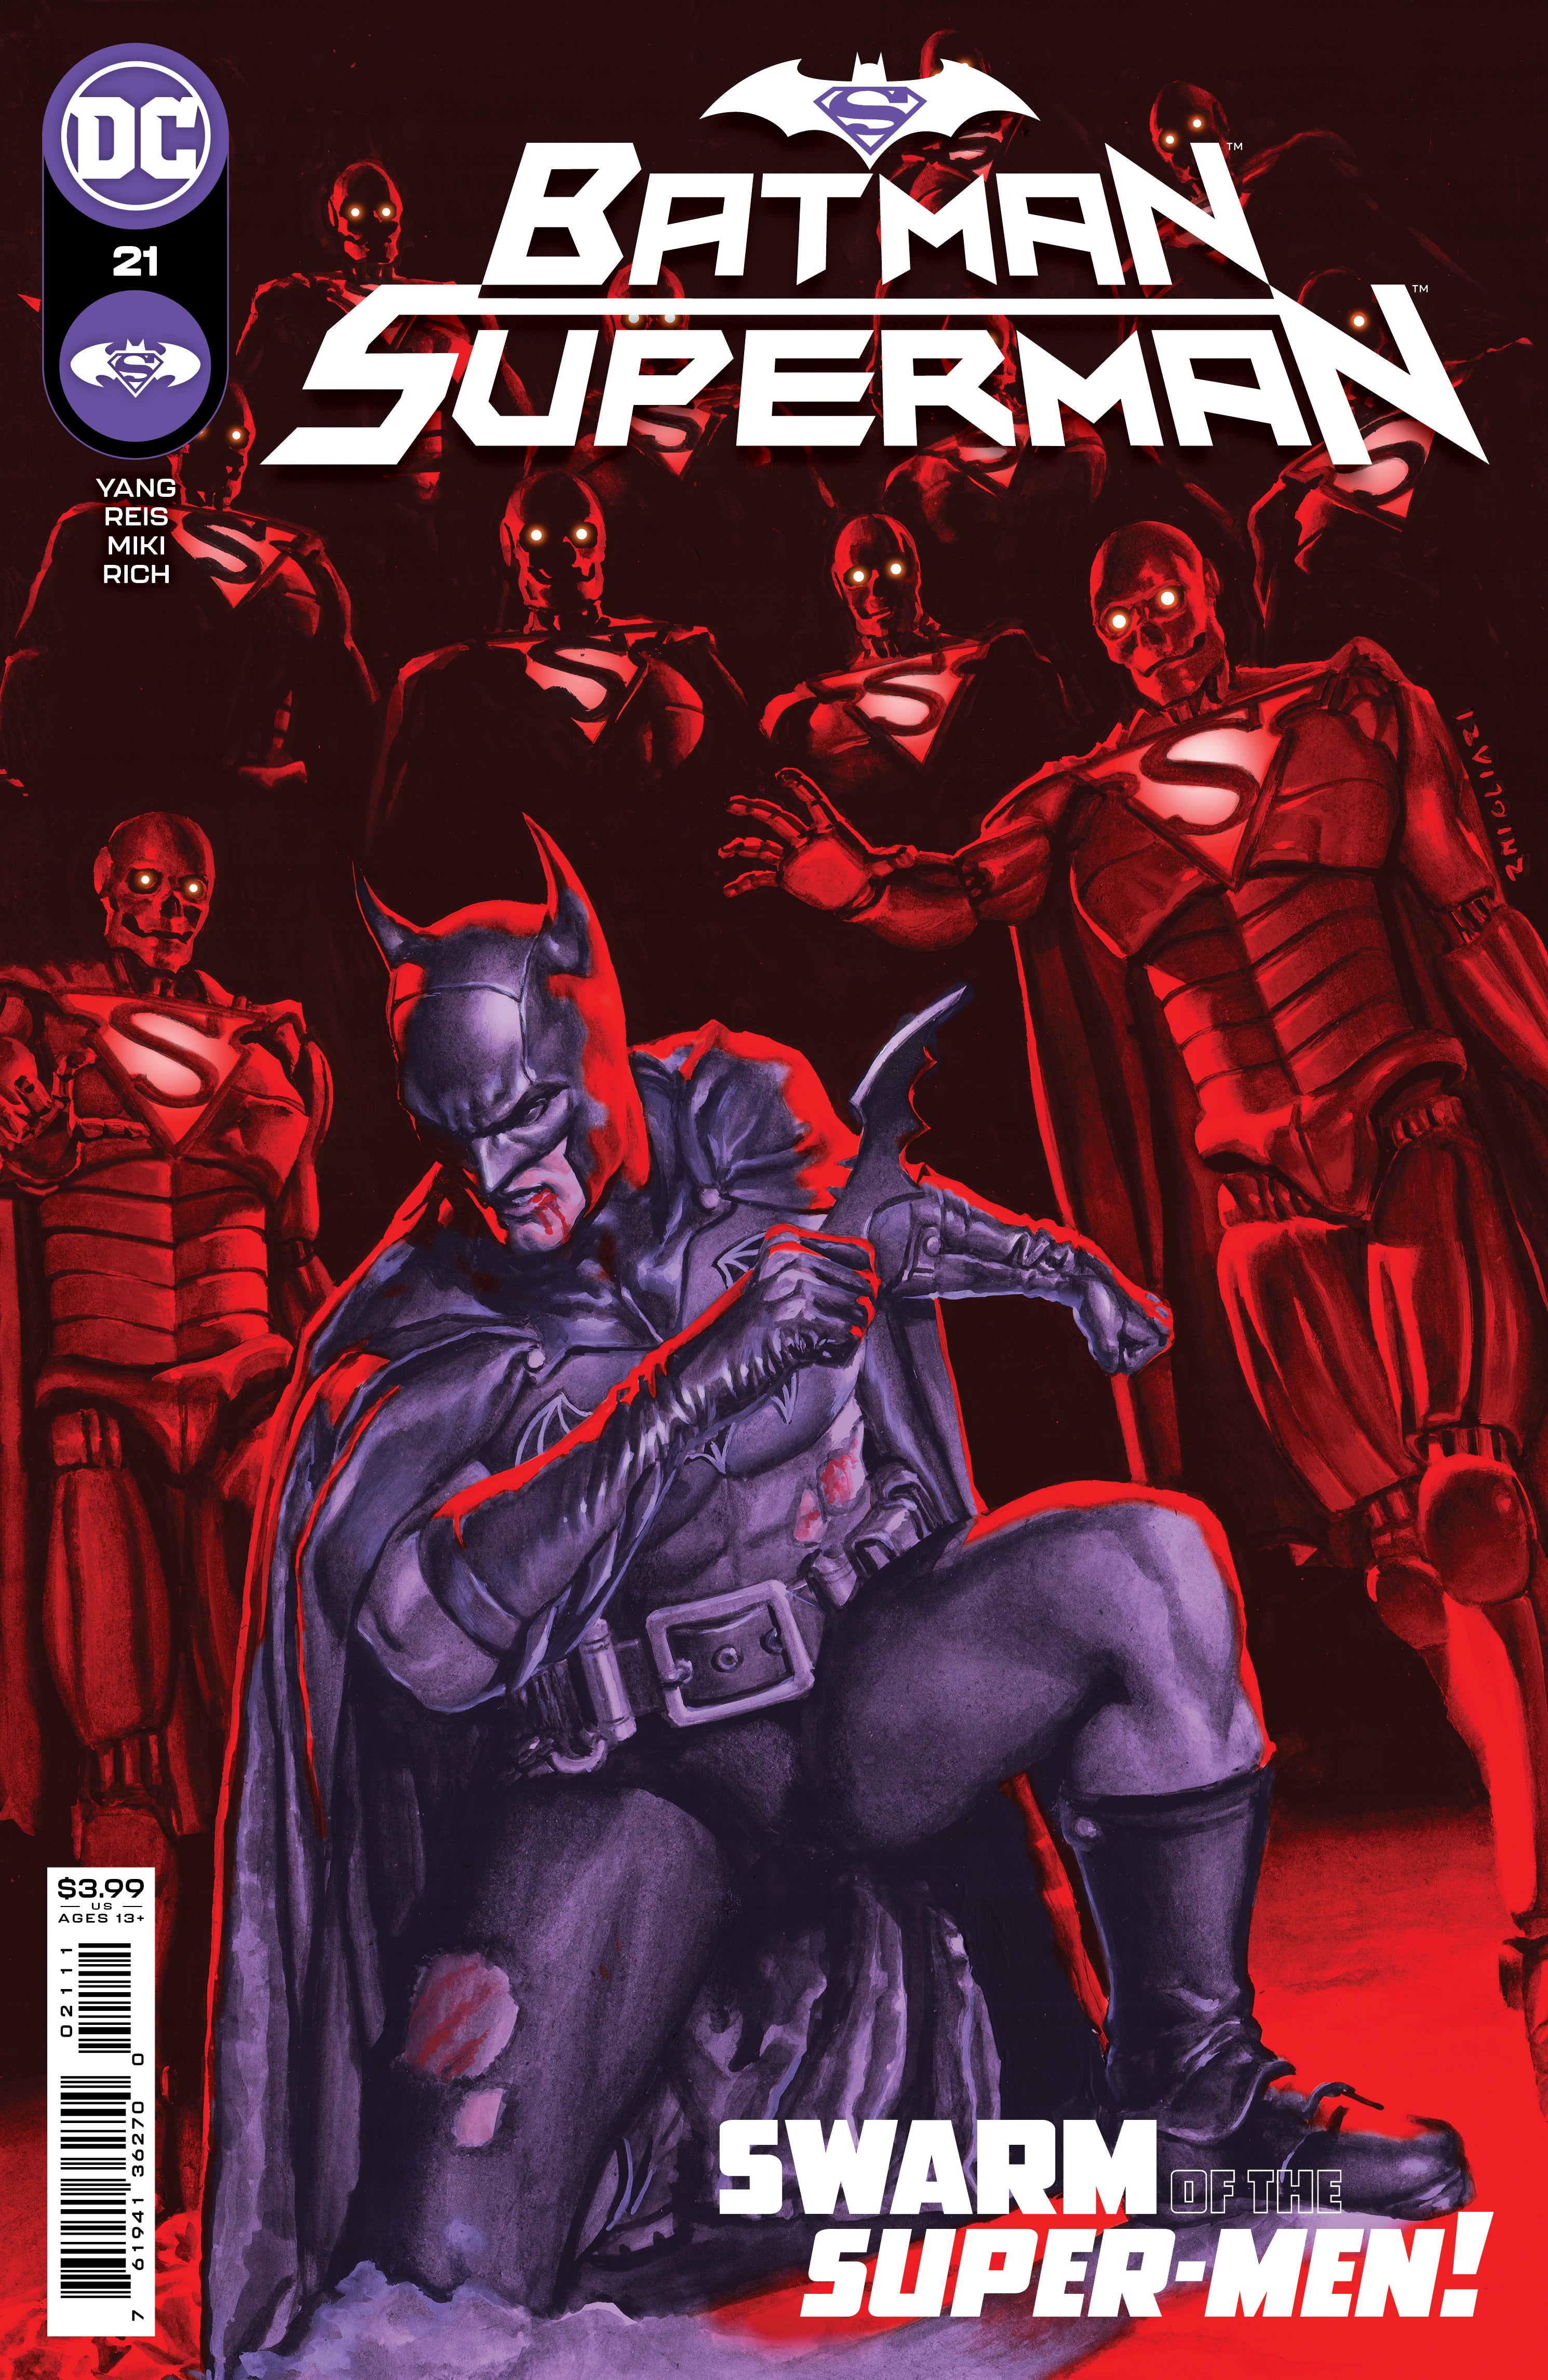 BATMAN SUPERMAN #21 CVR A RODOLFO MIGLIARI